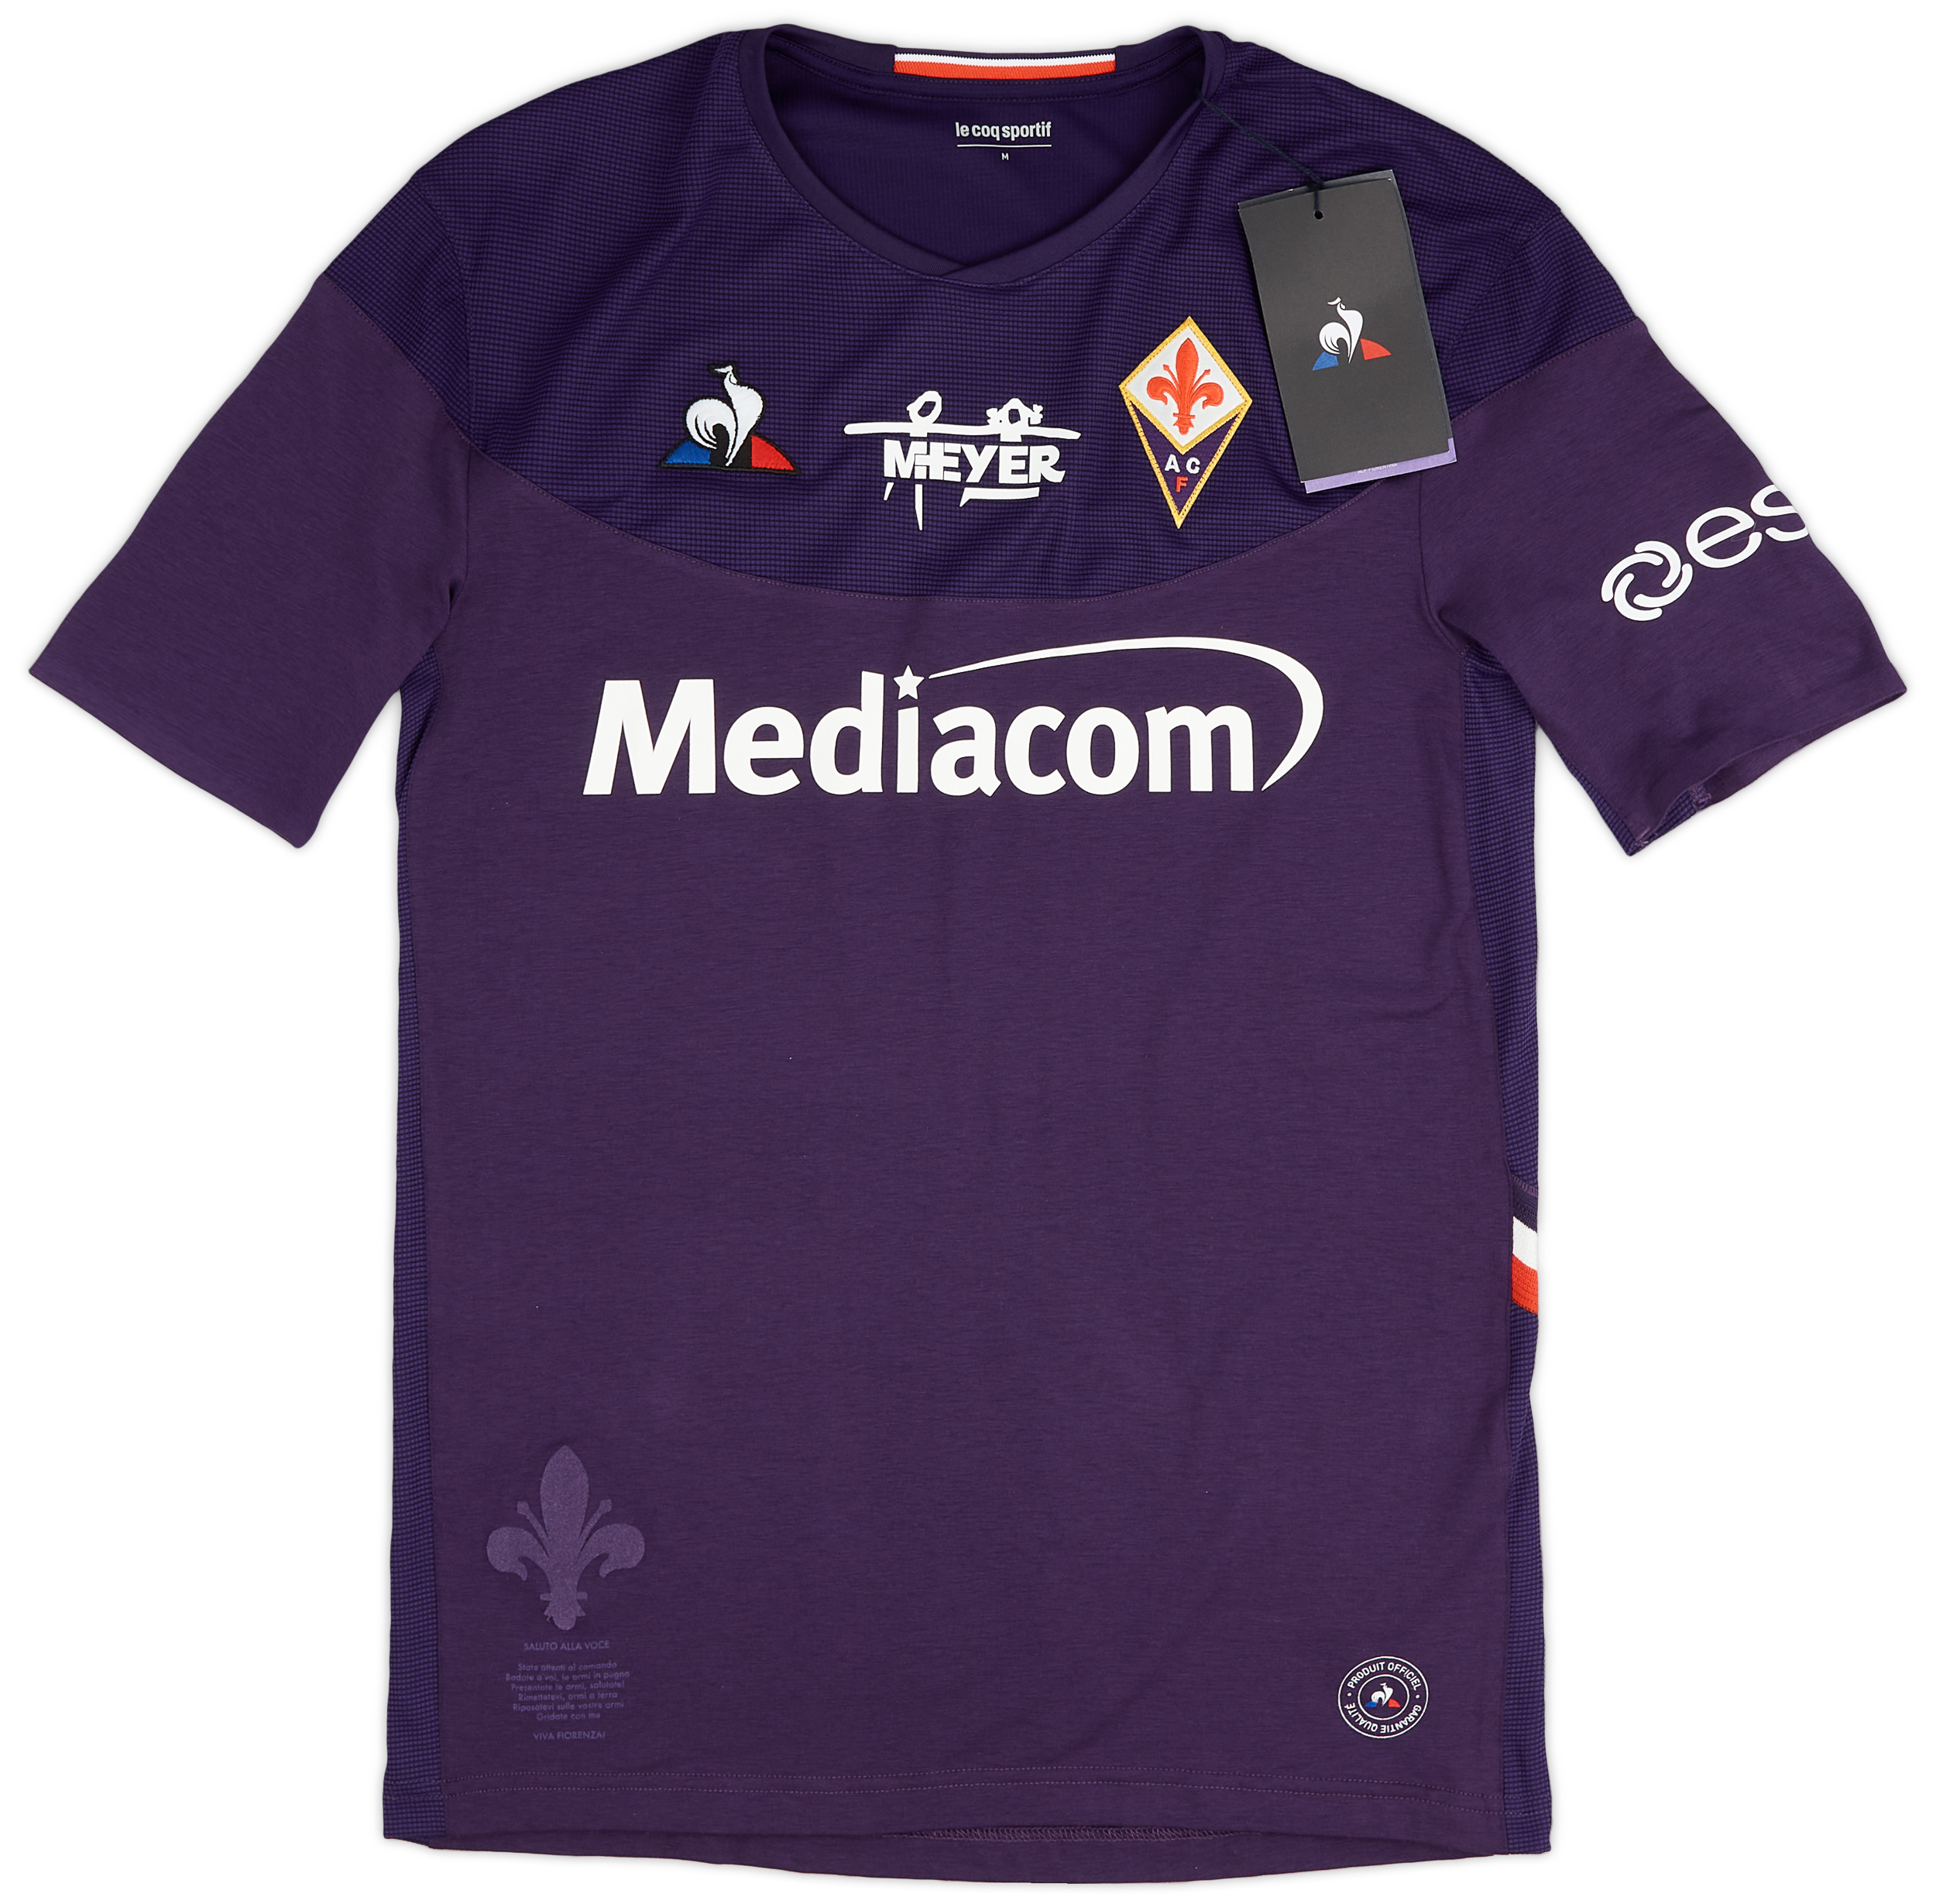 Fiorentina  home Maillot (Original)